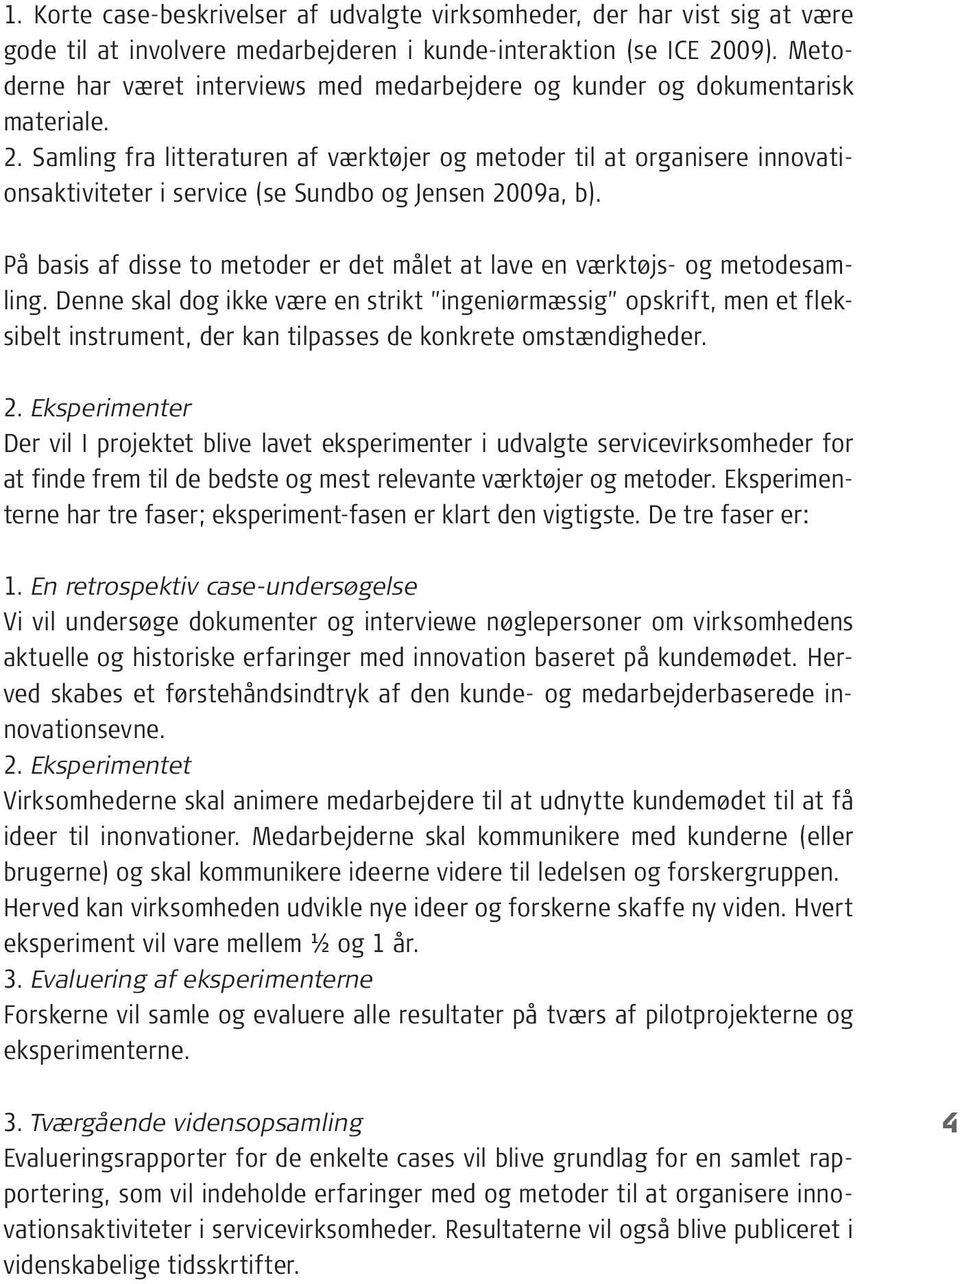 Samling fra litteraturen af værktøjer og metoder til at organisere innovationsaktiviteter i service (se Sundbo og Jensen 2009a, b).